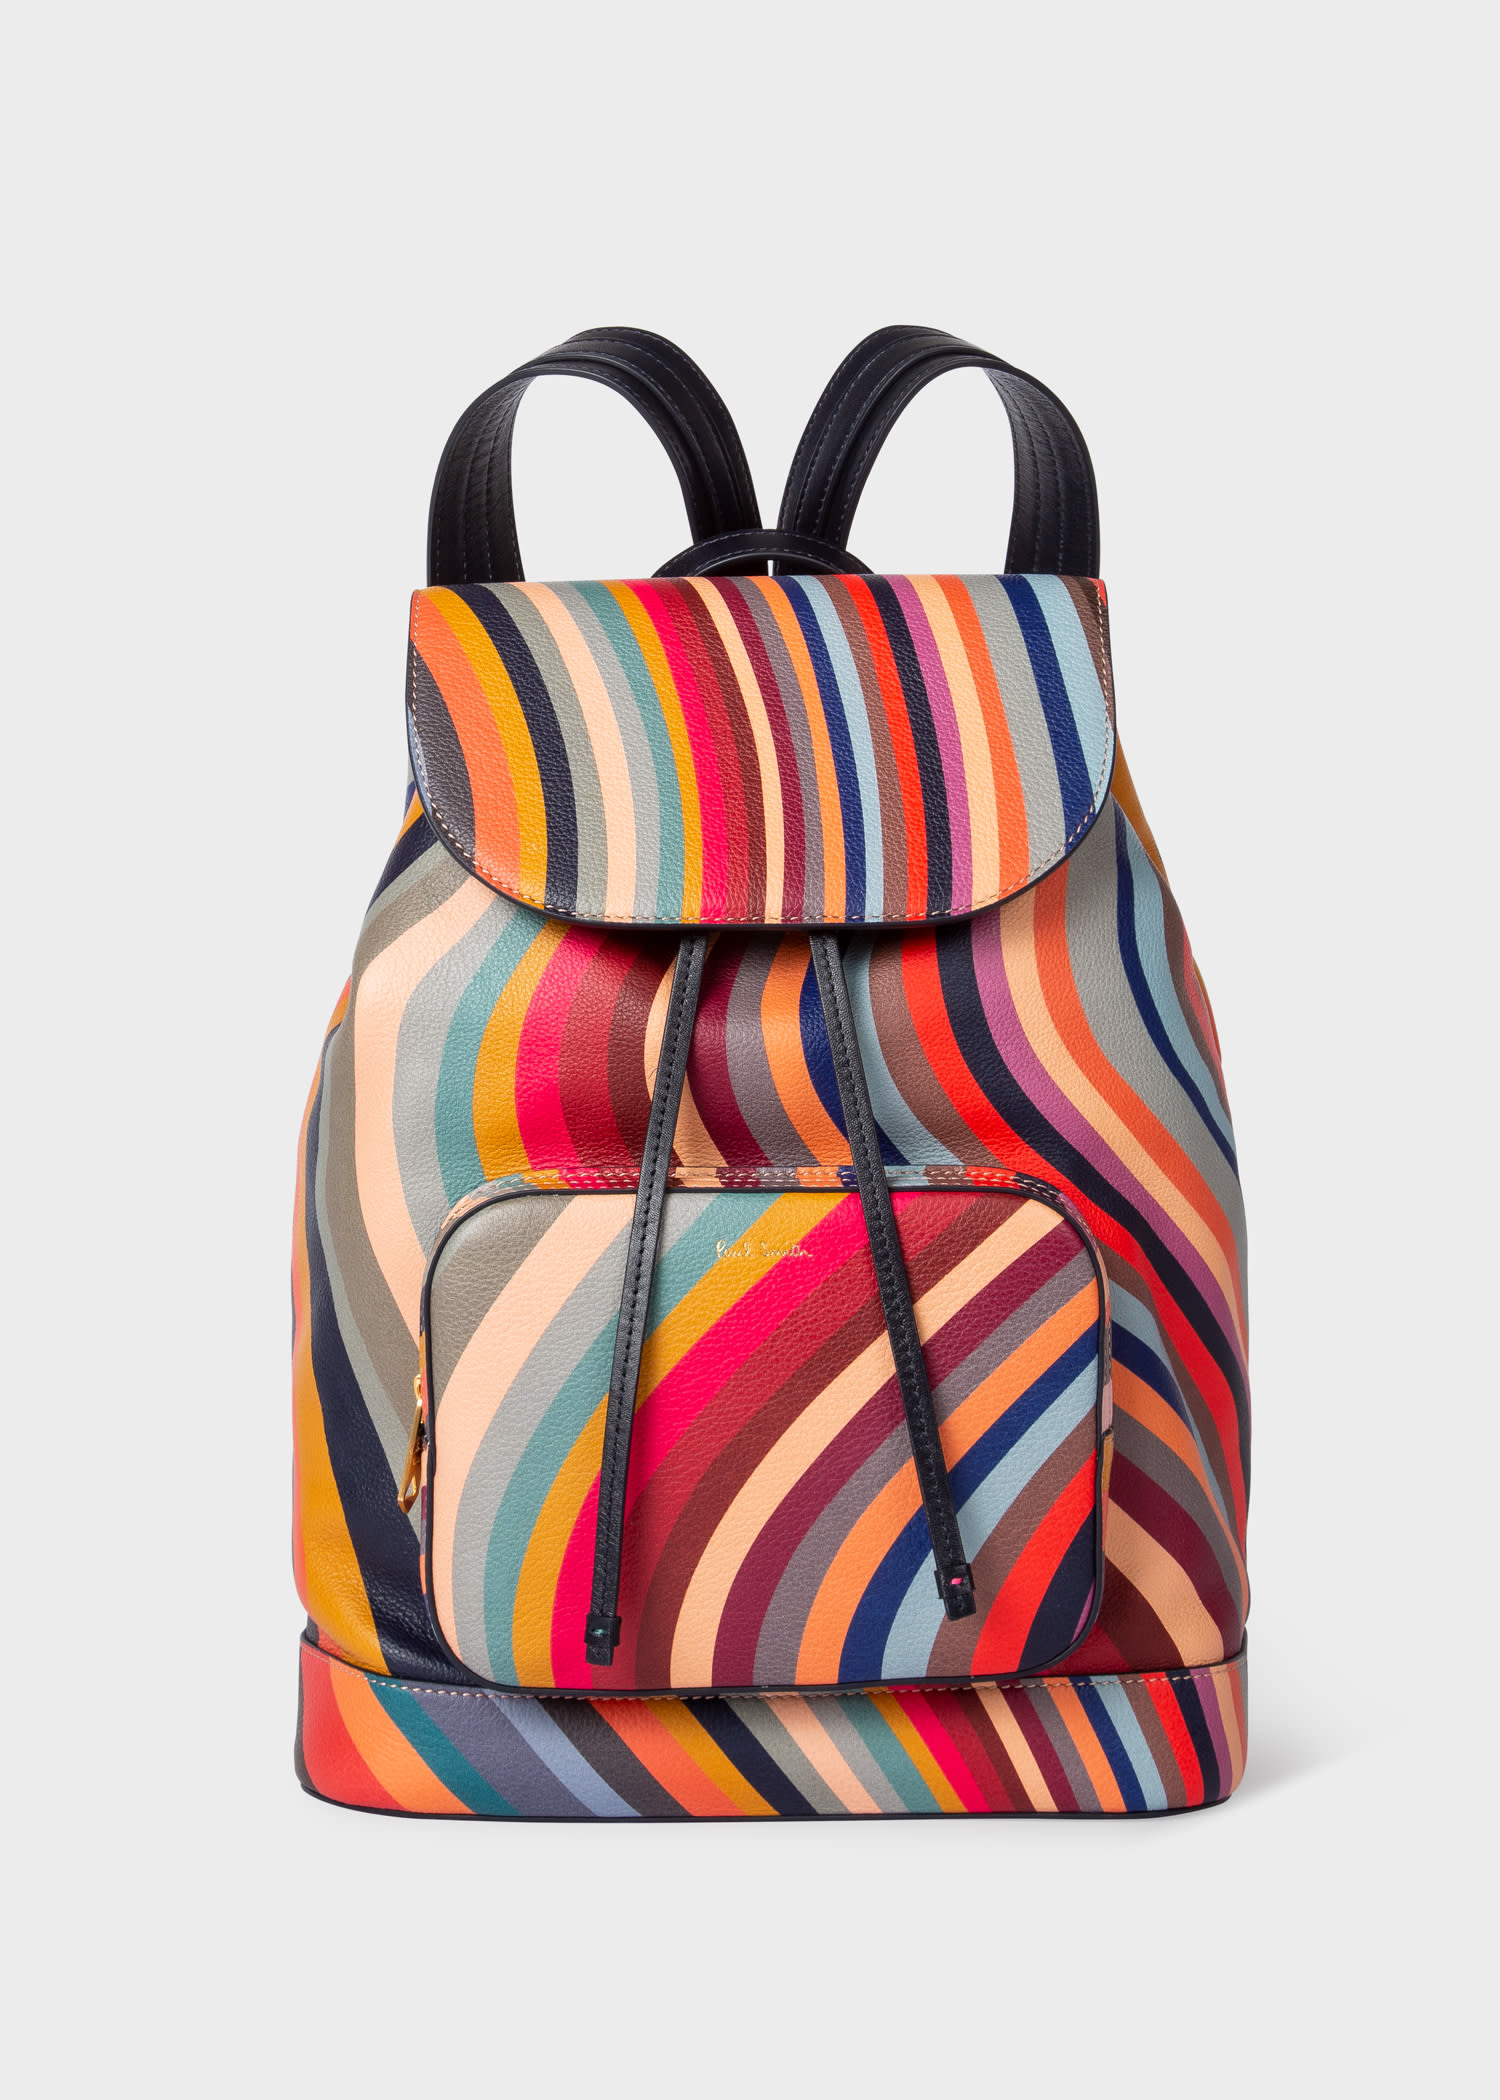 Paul Smith Women's 'Swirl' Print Leather Hobo Bag